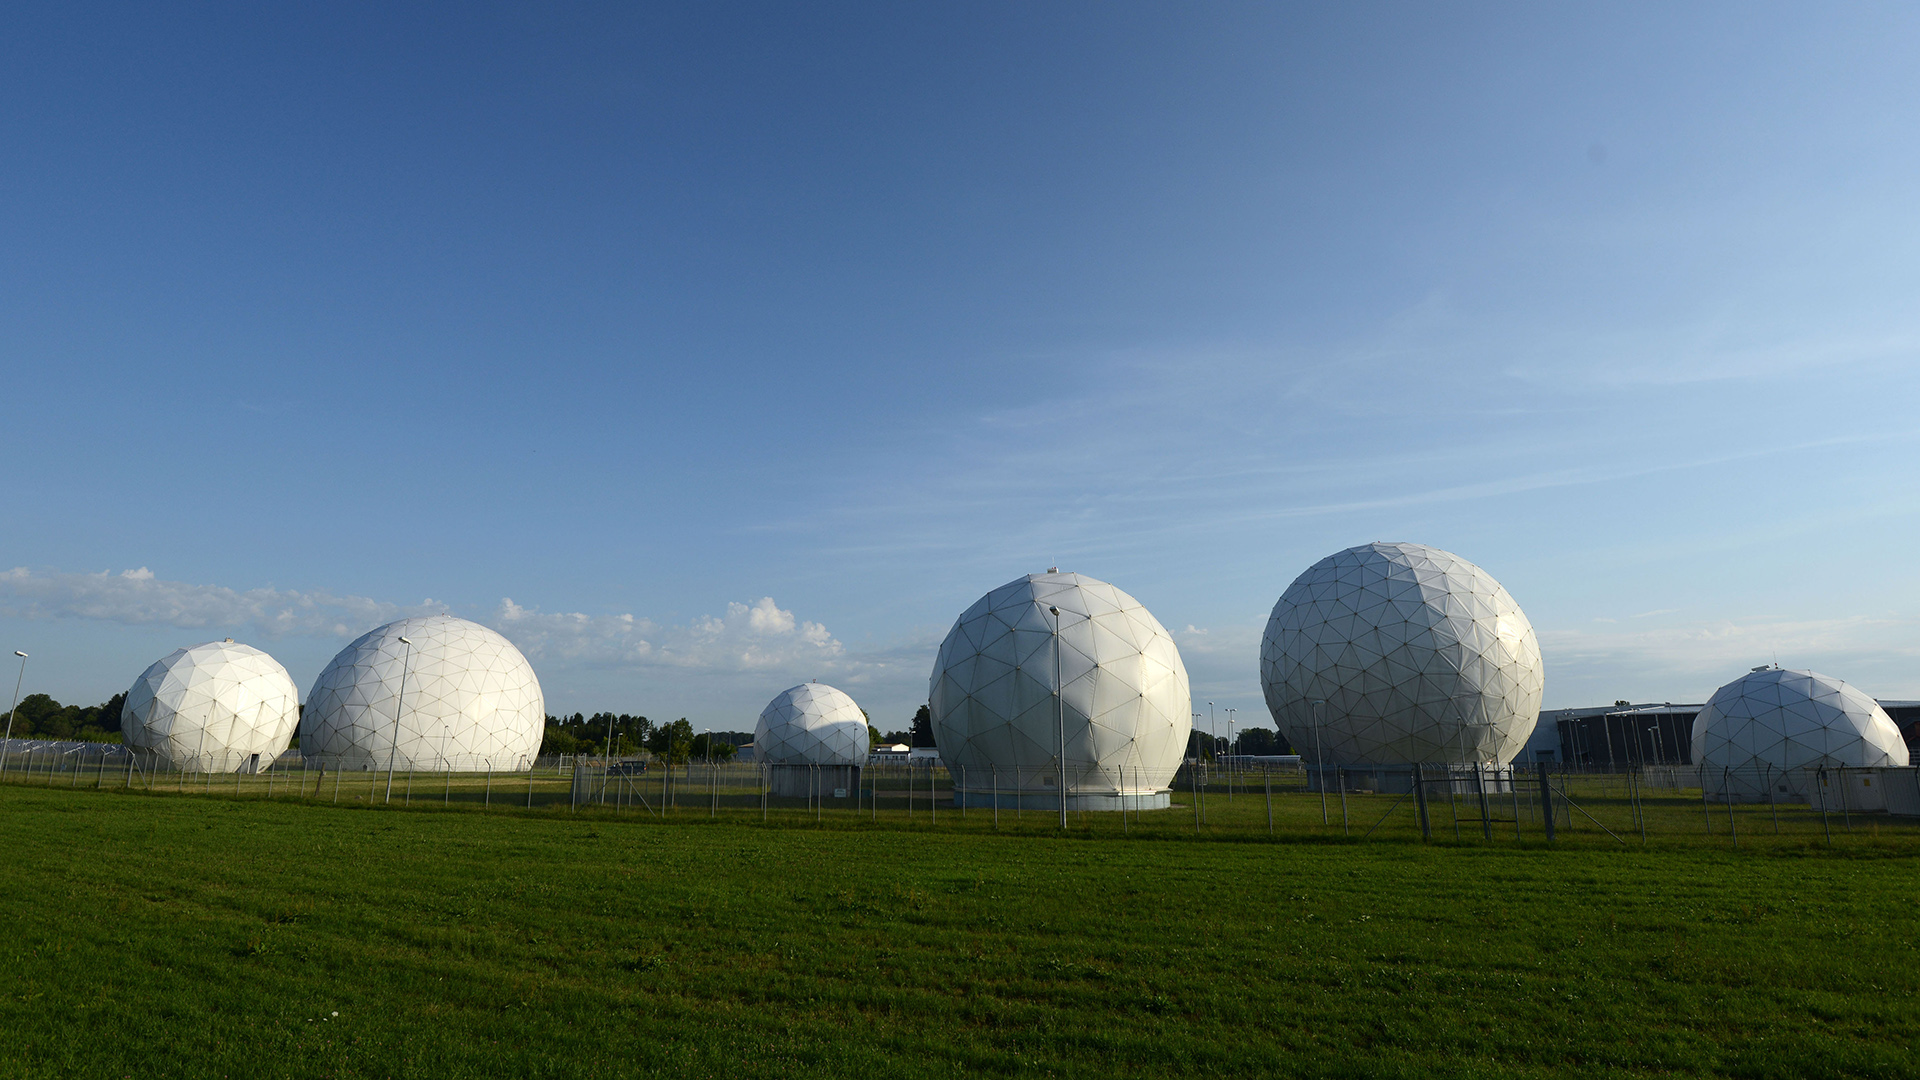 Radarkuppeln (Radome) stehen auf dem Gelände der Bad Aibling Station bei Bad Aibling (Bayern). (Archivbild vom 06.08.2013 ) | picture alliance / dpa